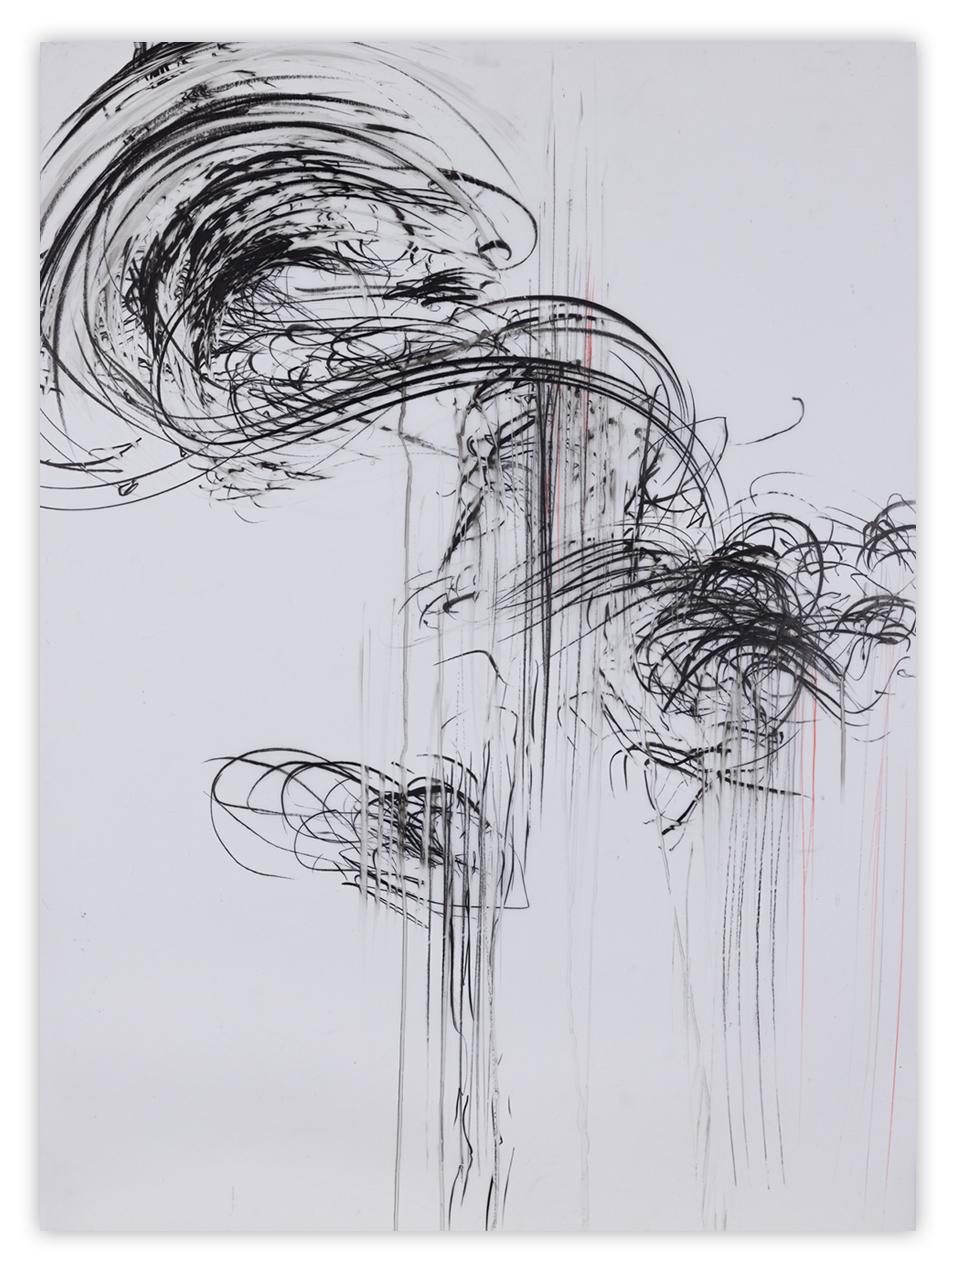 Jaanika Peerna Abstract Drawing - Gushing 3 (Abstract drawing)